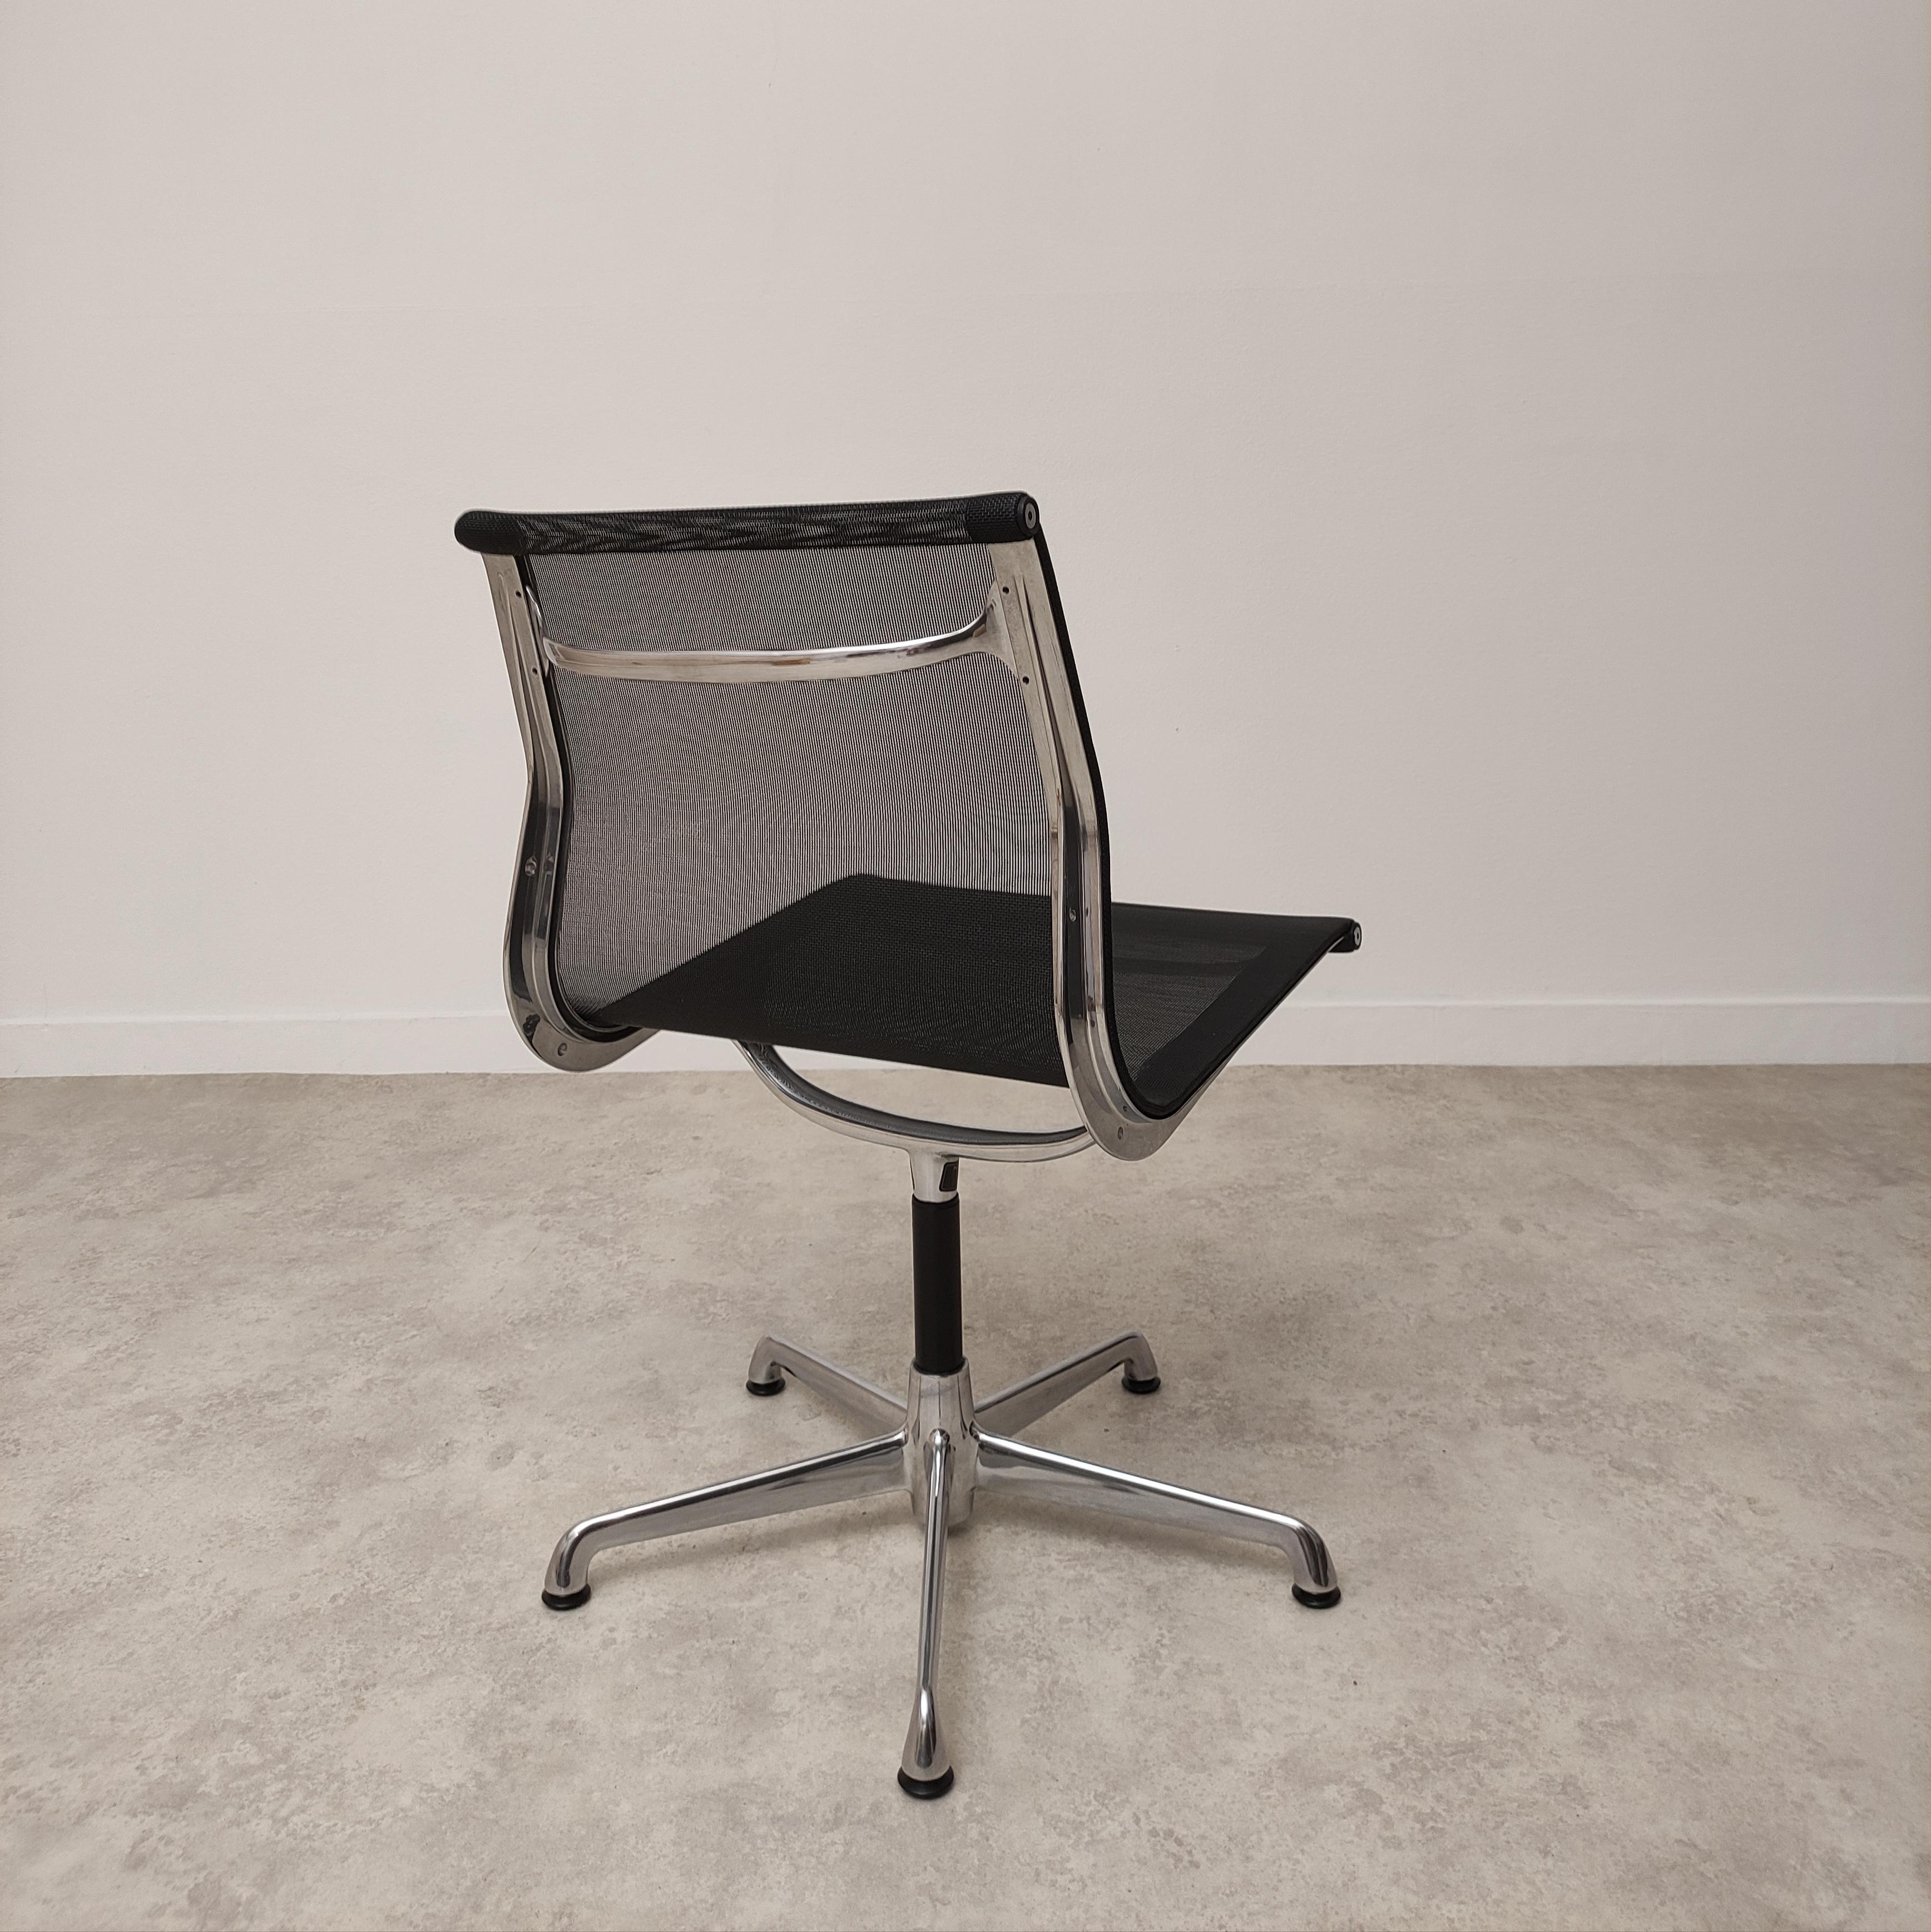 Étonnante chaise de bureau Ea107 conçue par Charles eames.
Cette première production ICF est la seule à avoir été licenciée par le groupe Hermann Miller, les détails sont donc parfaits comme sur le modèle américain.
Cette chaise est en parfait état,